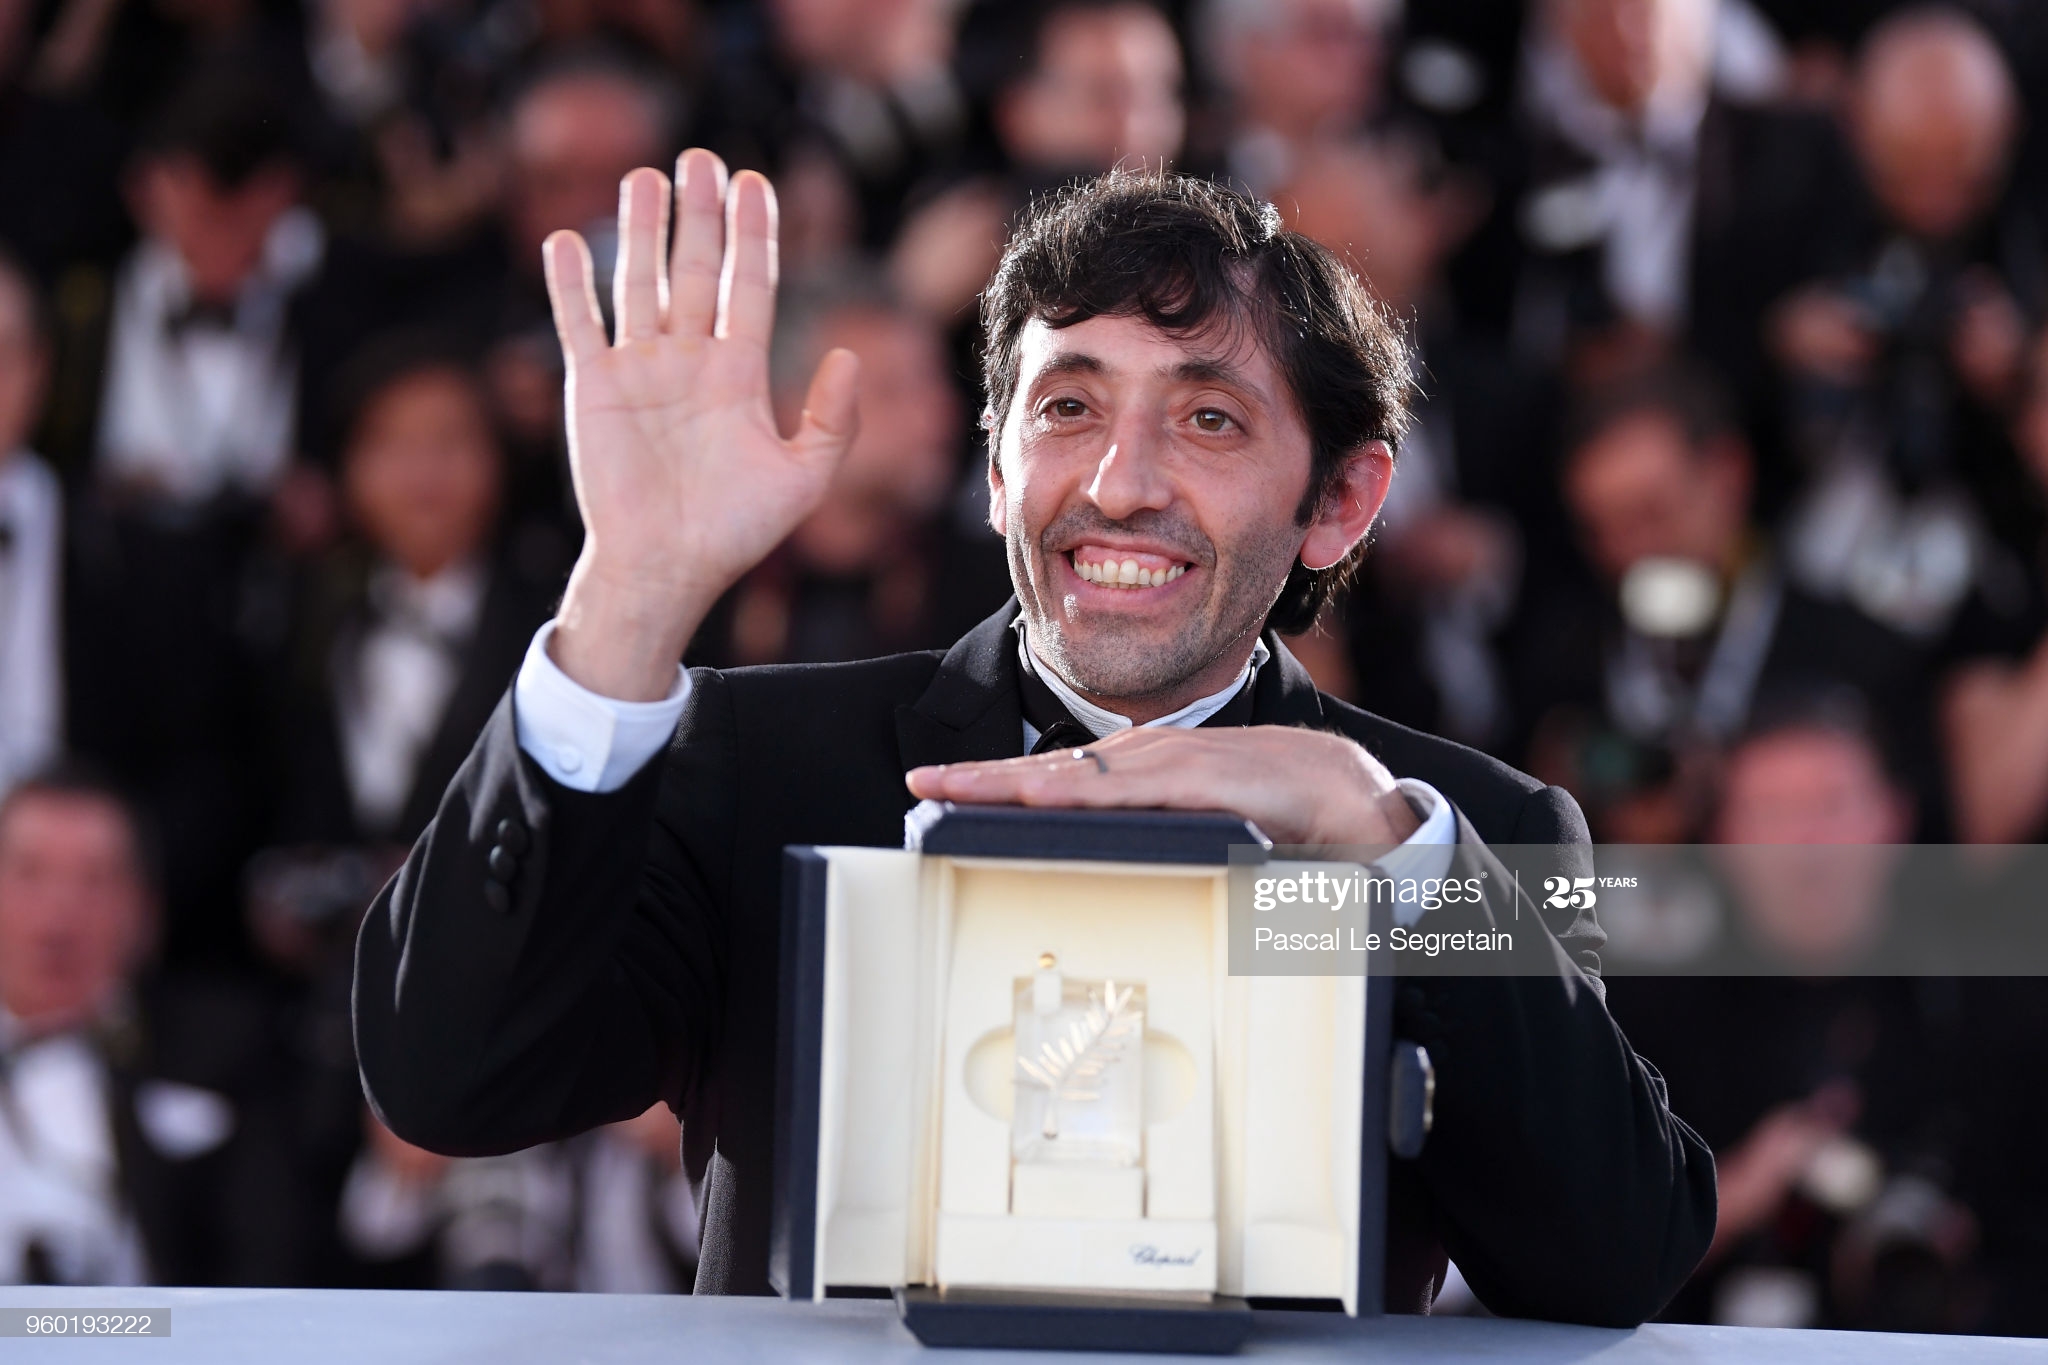 Marcello Fonte vince il premio come migliore attore al Festival di Cannes!